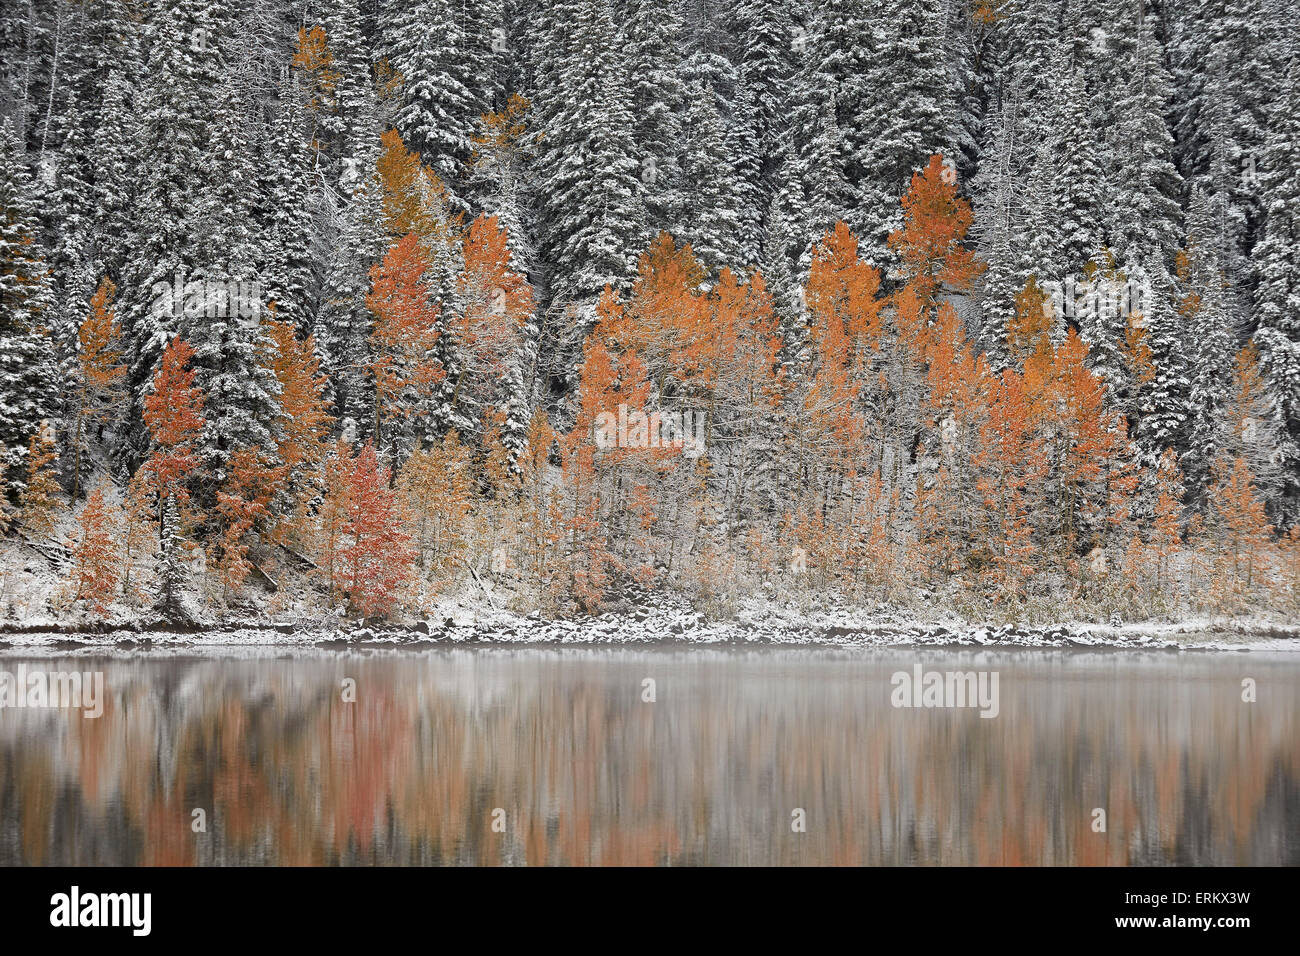 Aspens orange à l'automne chez les conifères couverts de neige à un lac, Grand Mesa National Forest, Colorado, USA Banque D'Images